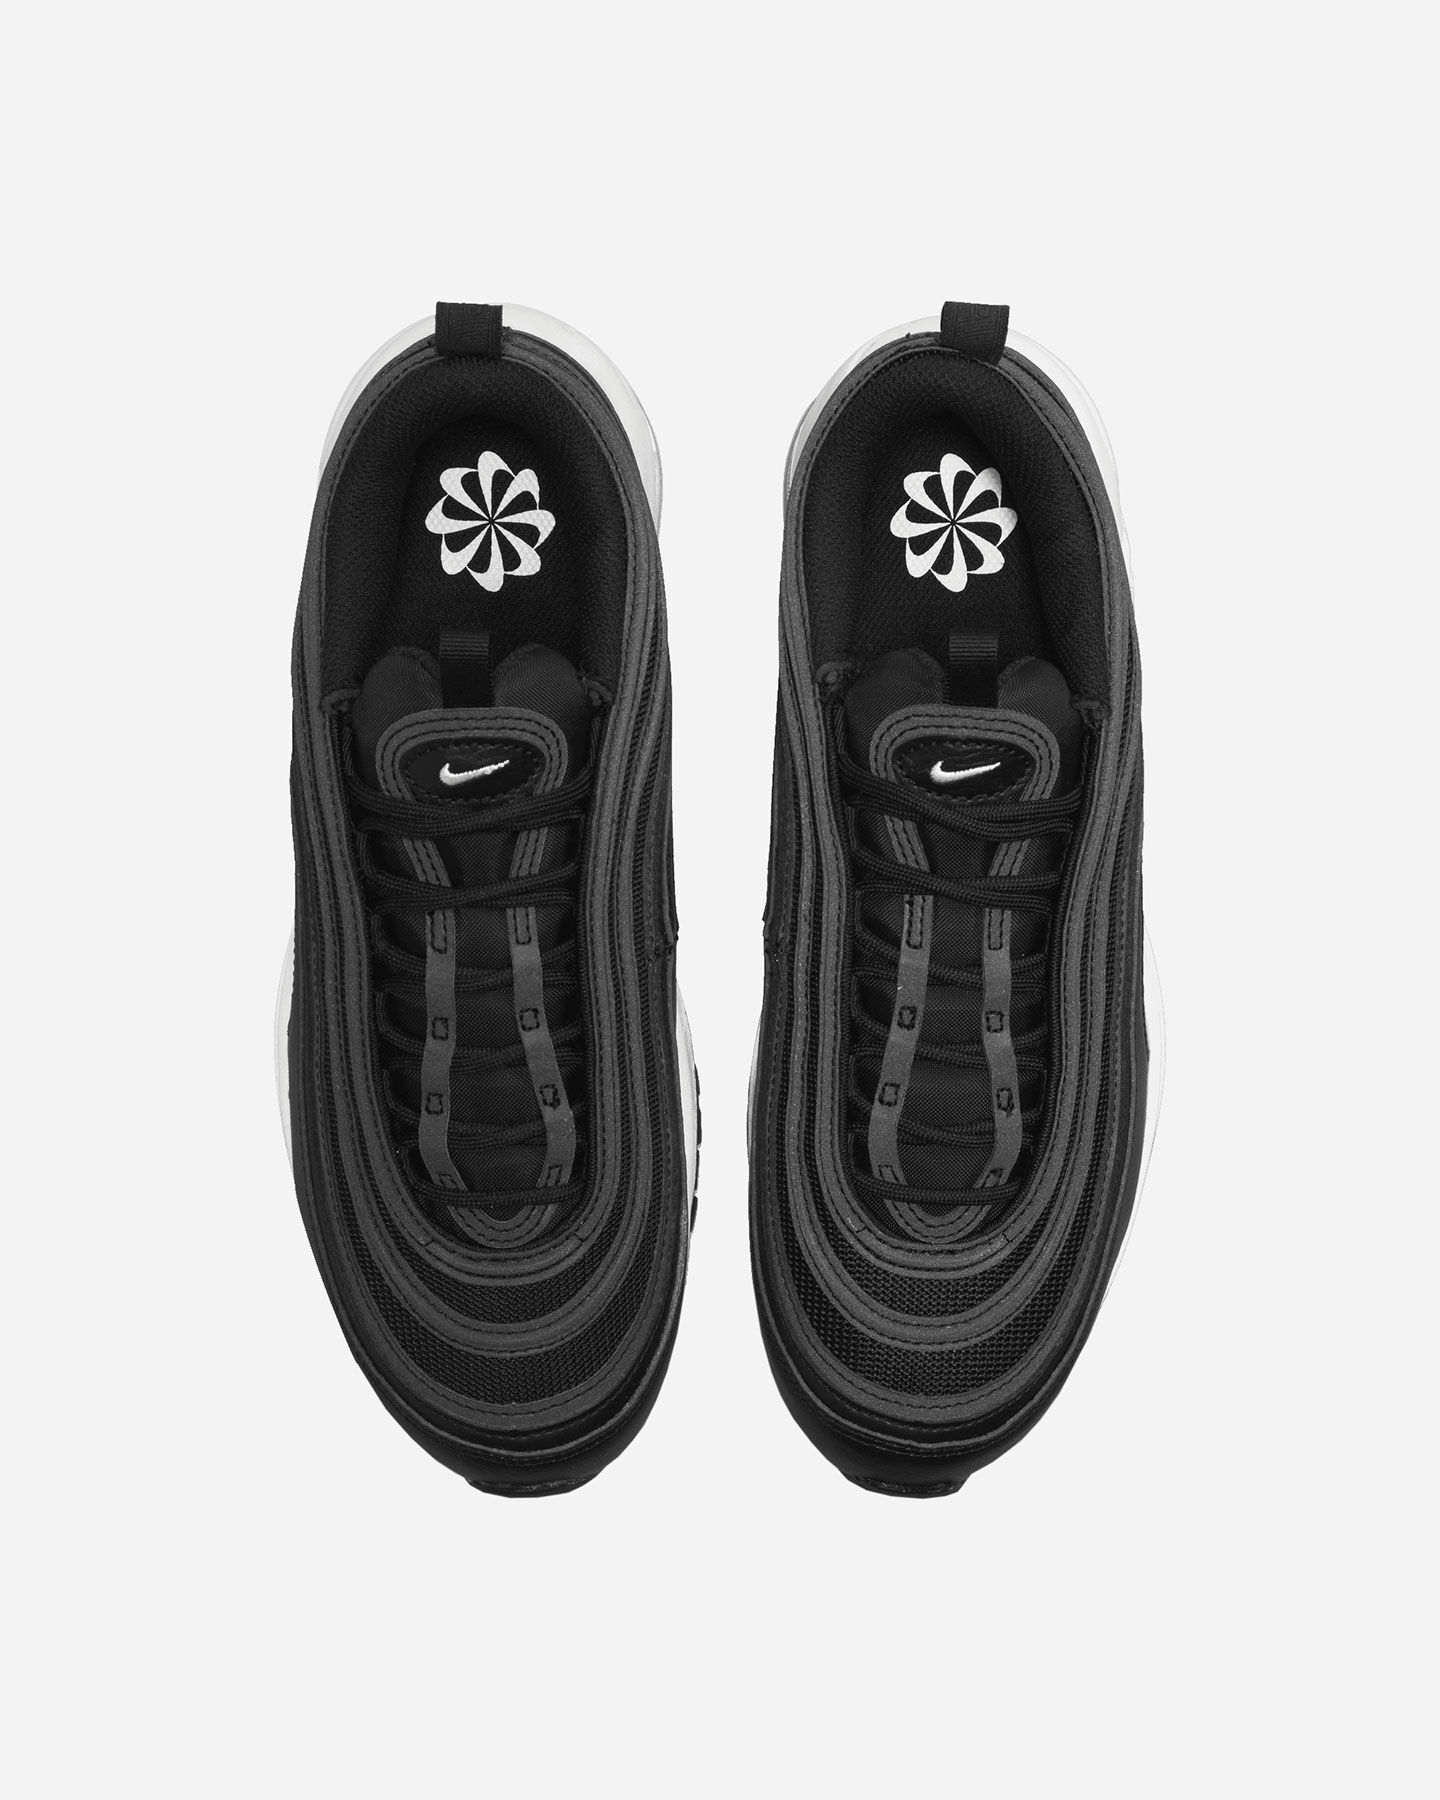  Scarpe sneakers NIKE AIR MAX 97 W S5502243|001|6.5 scatto 3